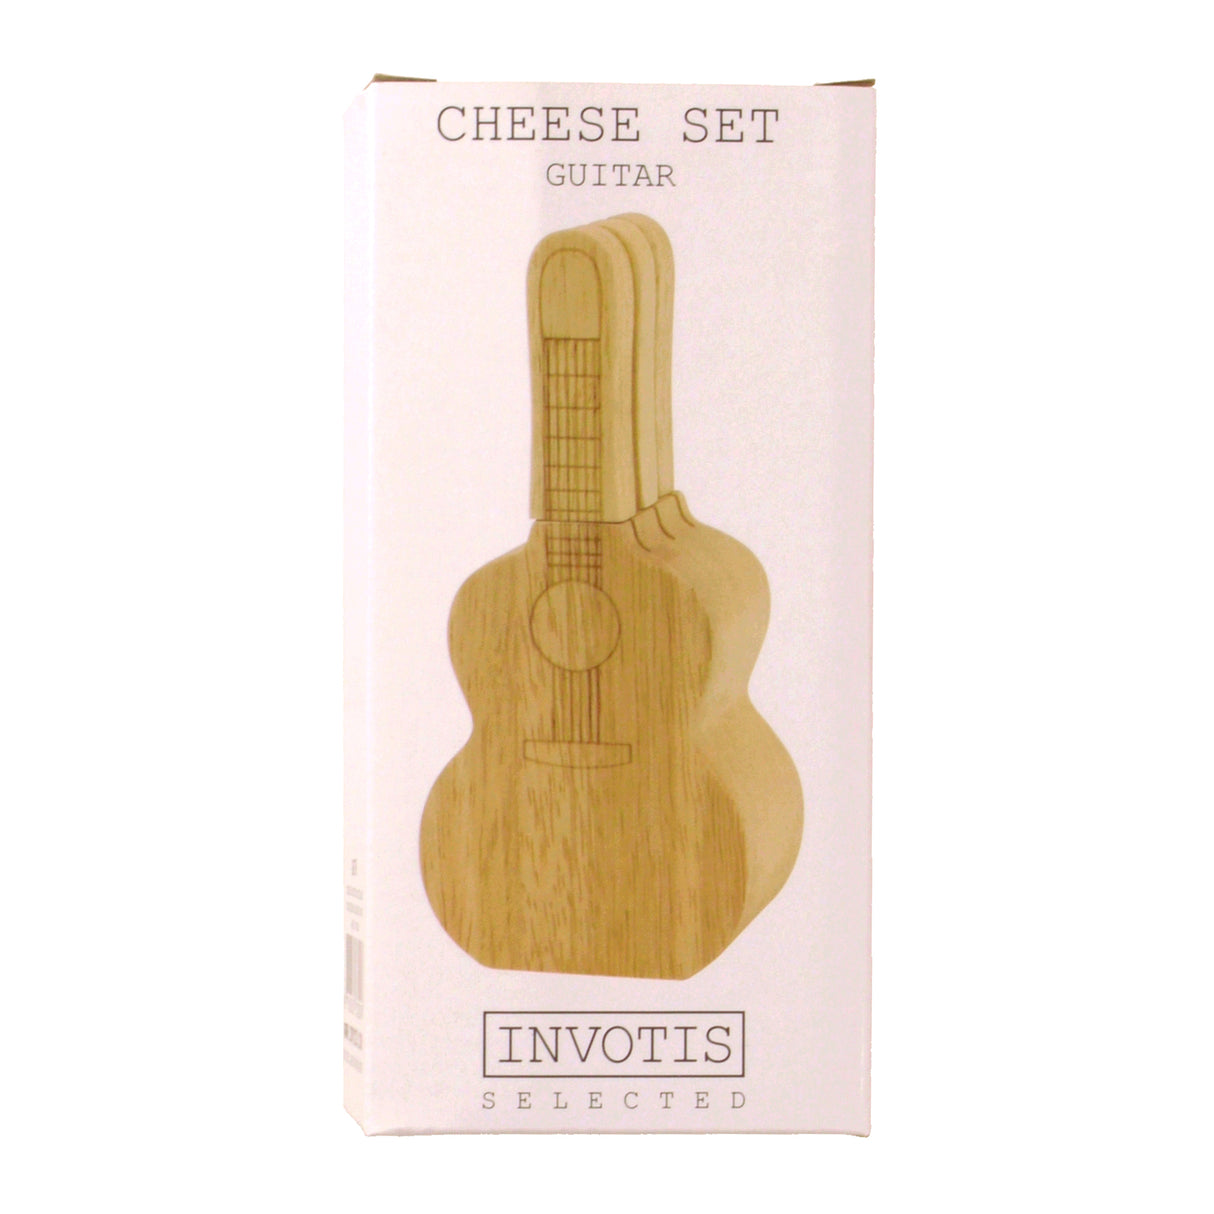 Gitarre Messerblock mit 3 Messern für Käse